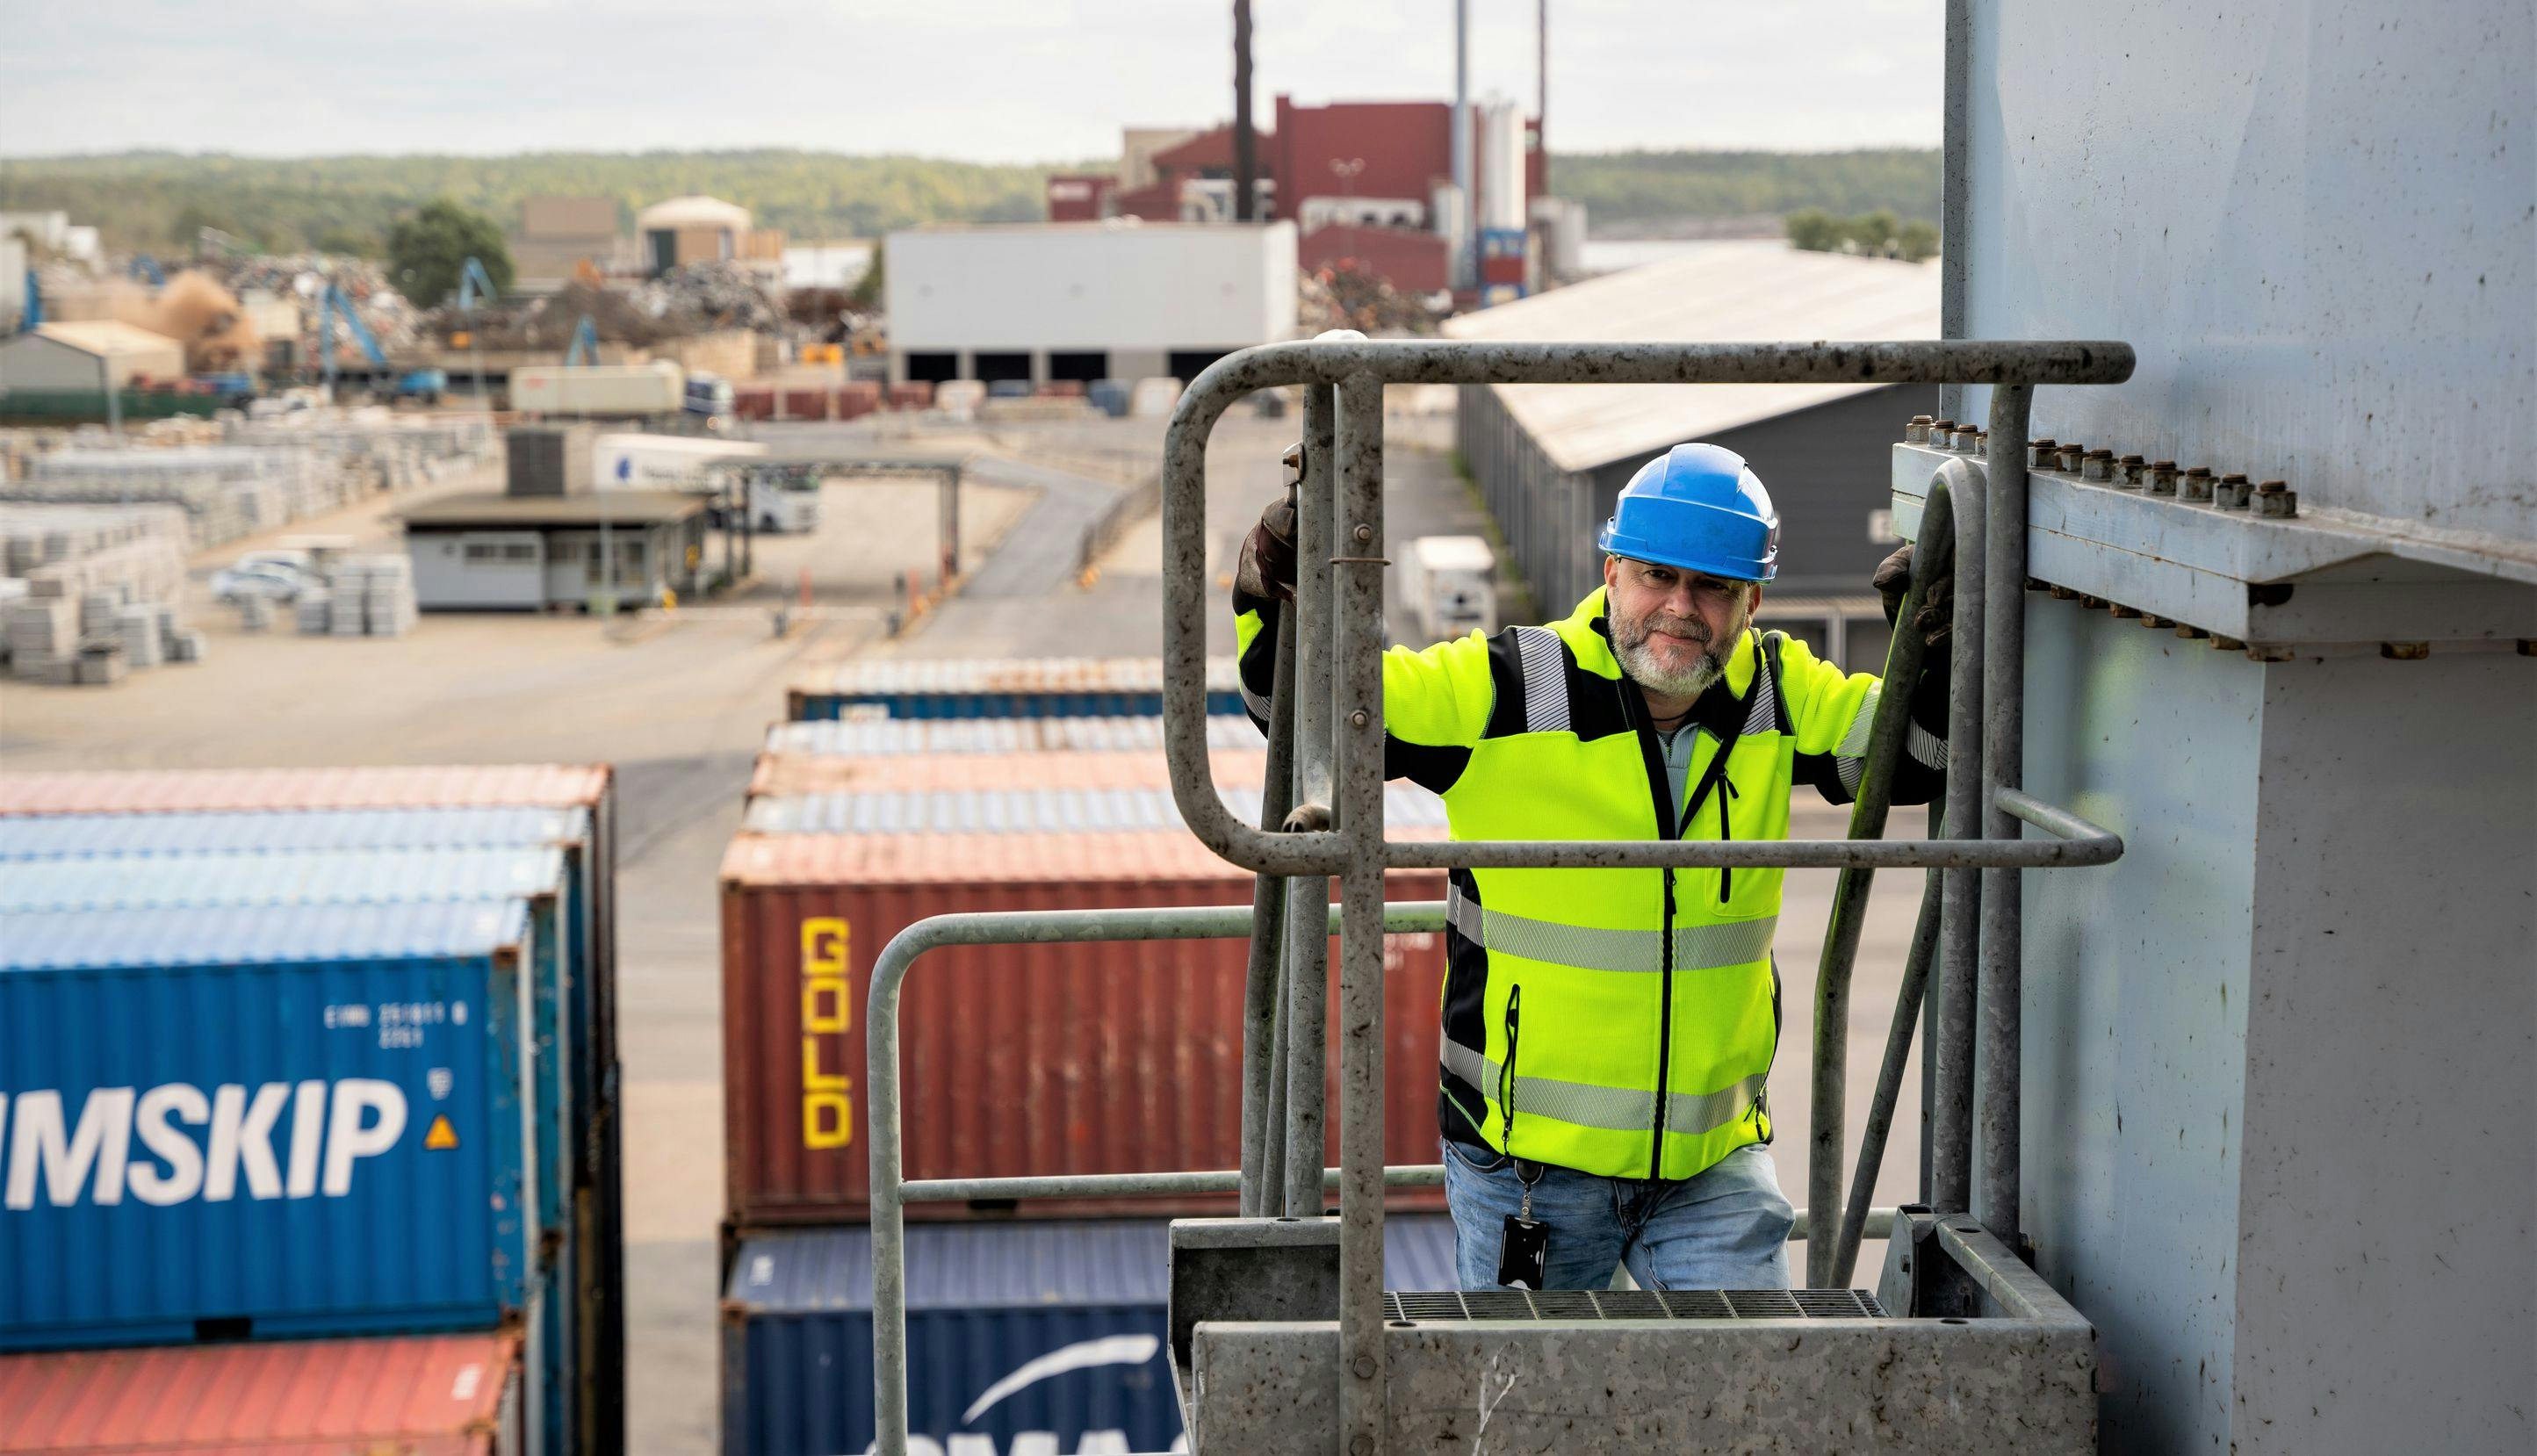 Mann med refleksvest og hjelm klatrer opp en ekstern trapp på et industribygg i en havn. I bakgrunnen synes containere. 